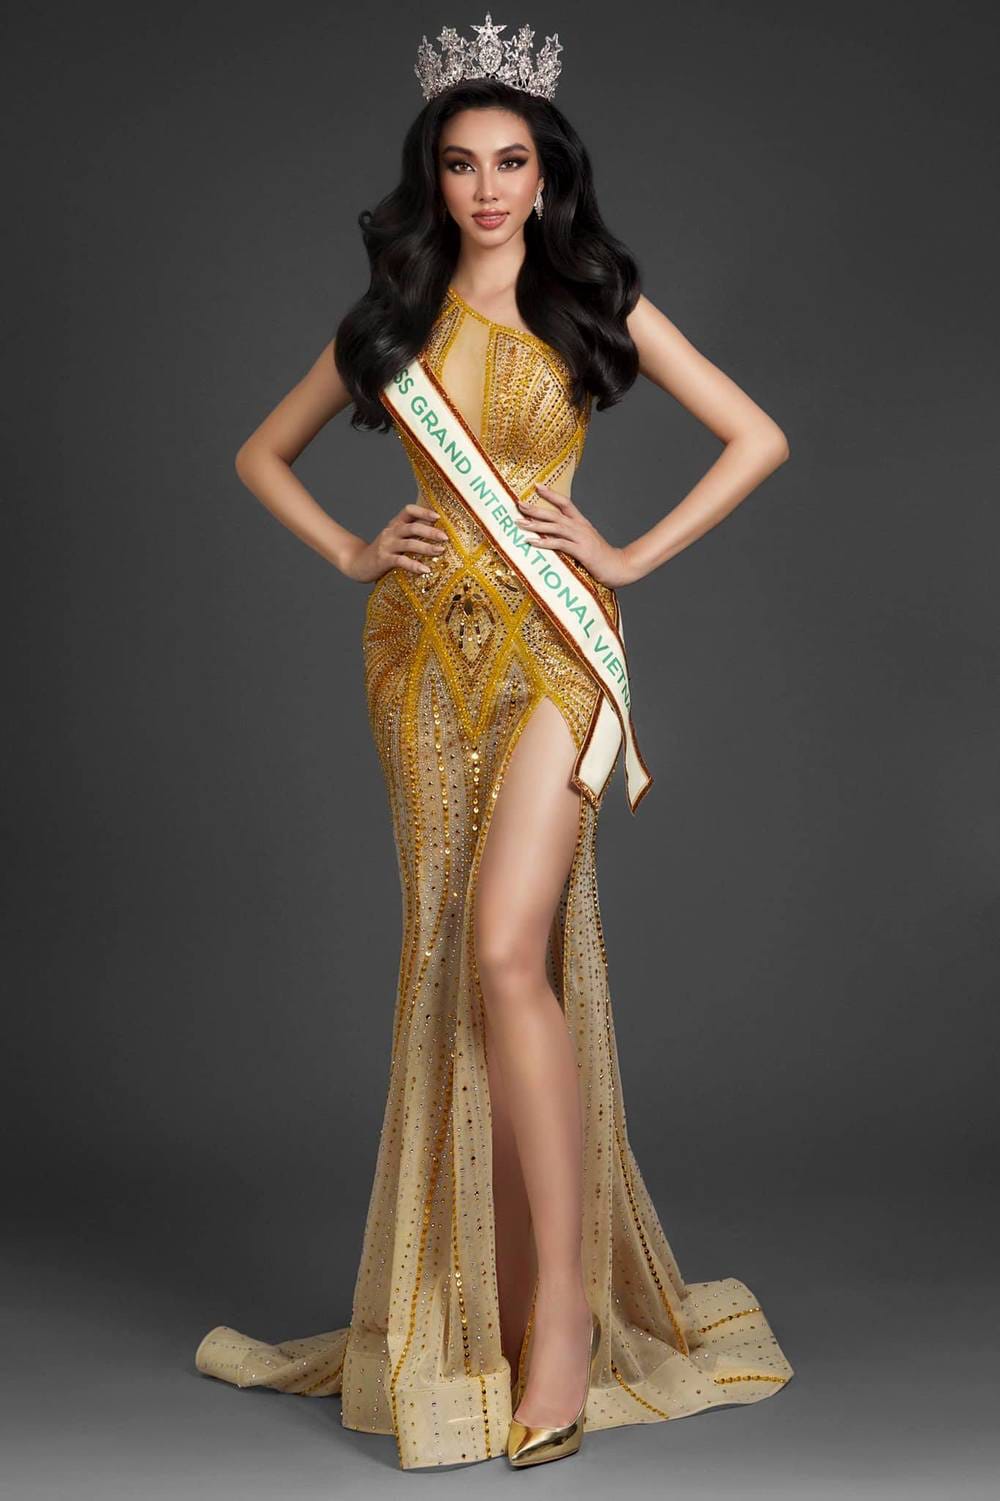 Thuỳ Tiên bị tấn công bằng ngôn từ dữ dội bởi admin trang sắc đẹp trước khi thi Miss Grand International 2021 - Hình 2